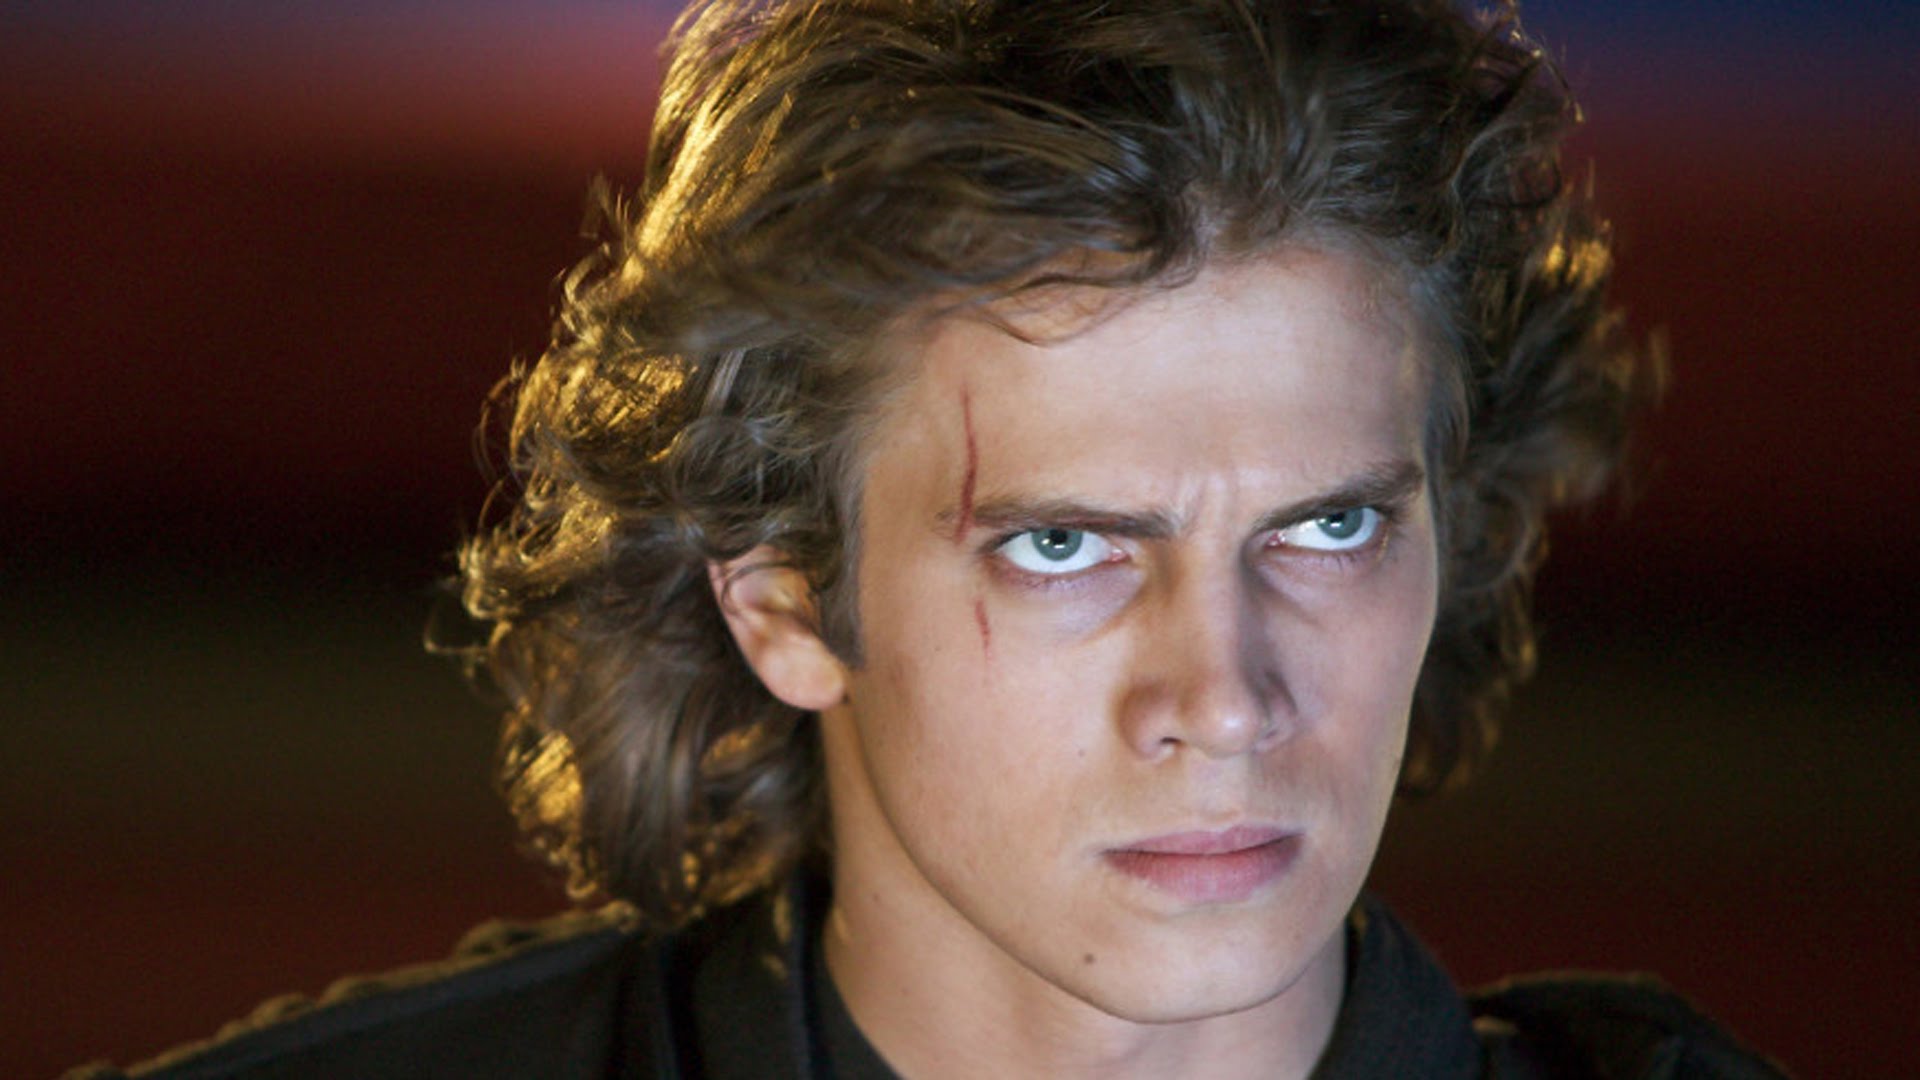 Hayden Christensen, o Anakin Skywalker da trilogia Star Wars dos anos 2000.